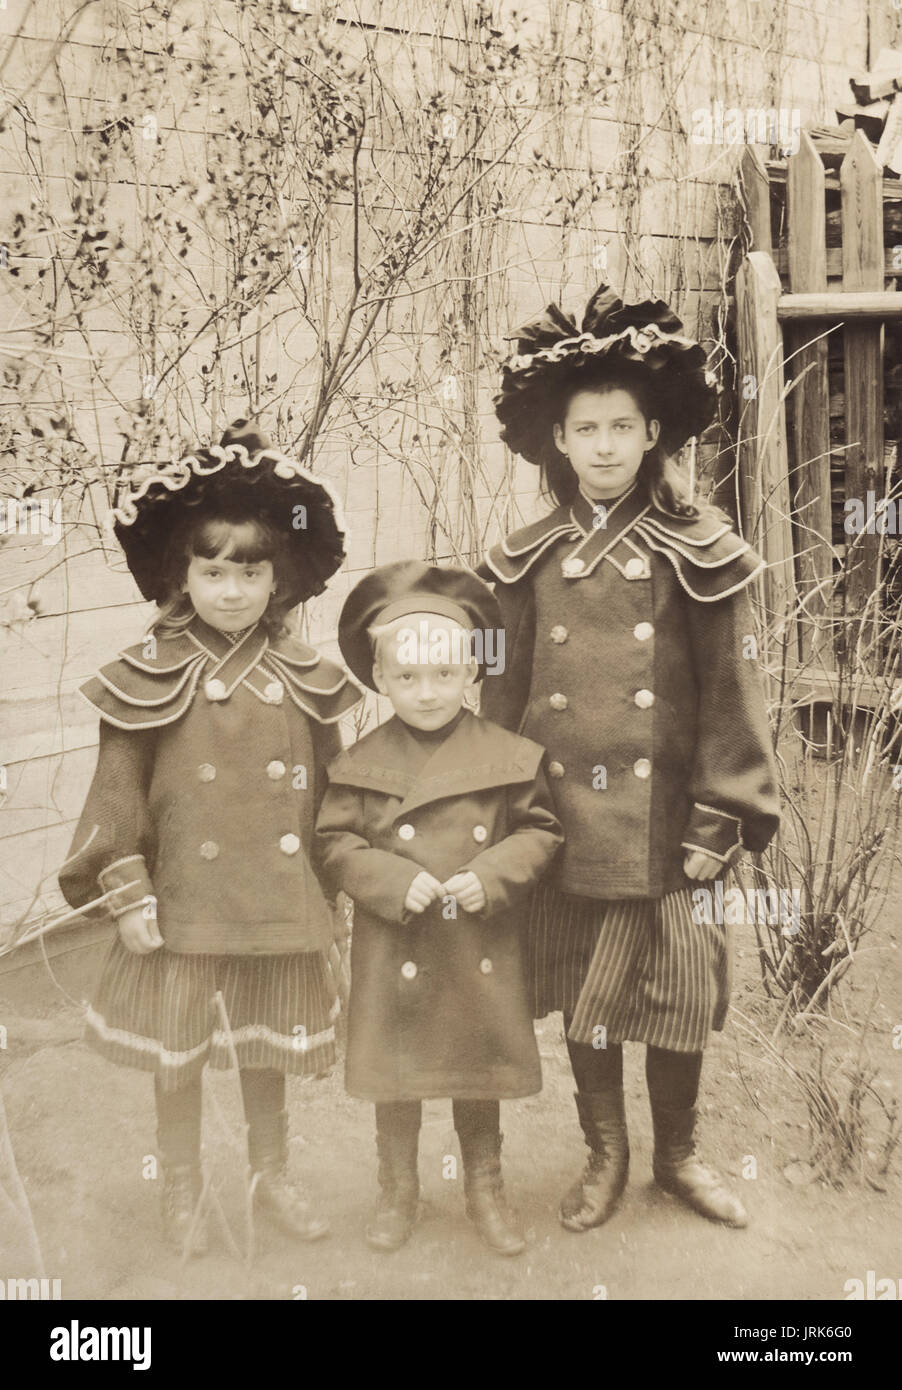 Bambini all'ultima moda. Foto d'epoca, Russia, 1905 Foto Stock